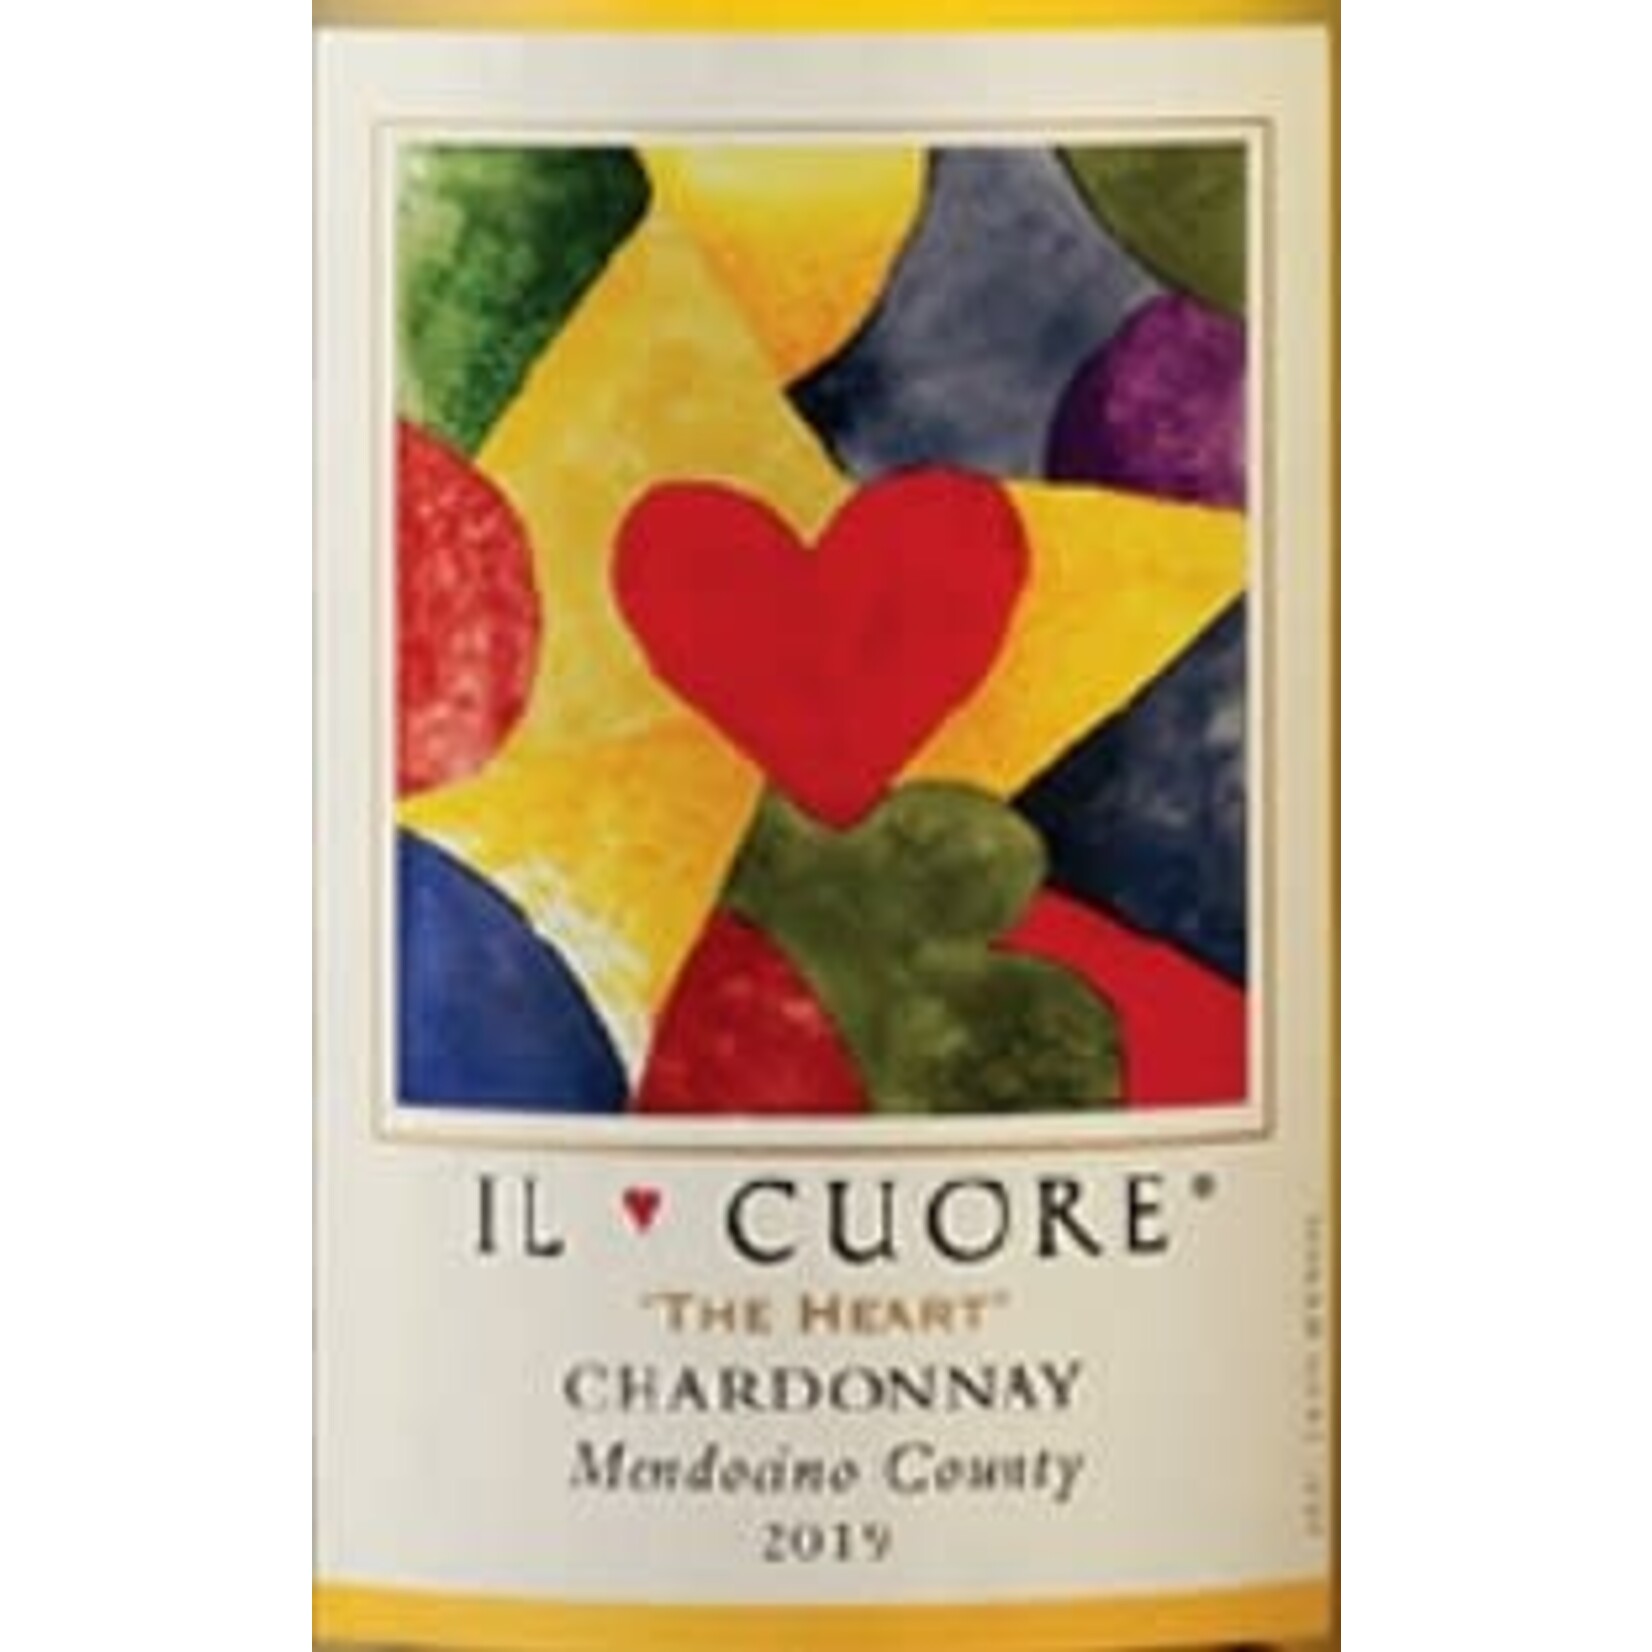 Il Cuore Chardonnay Mendocino County 2019 California